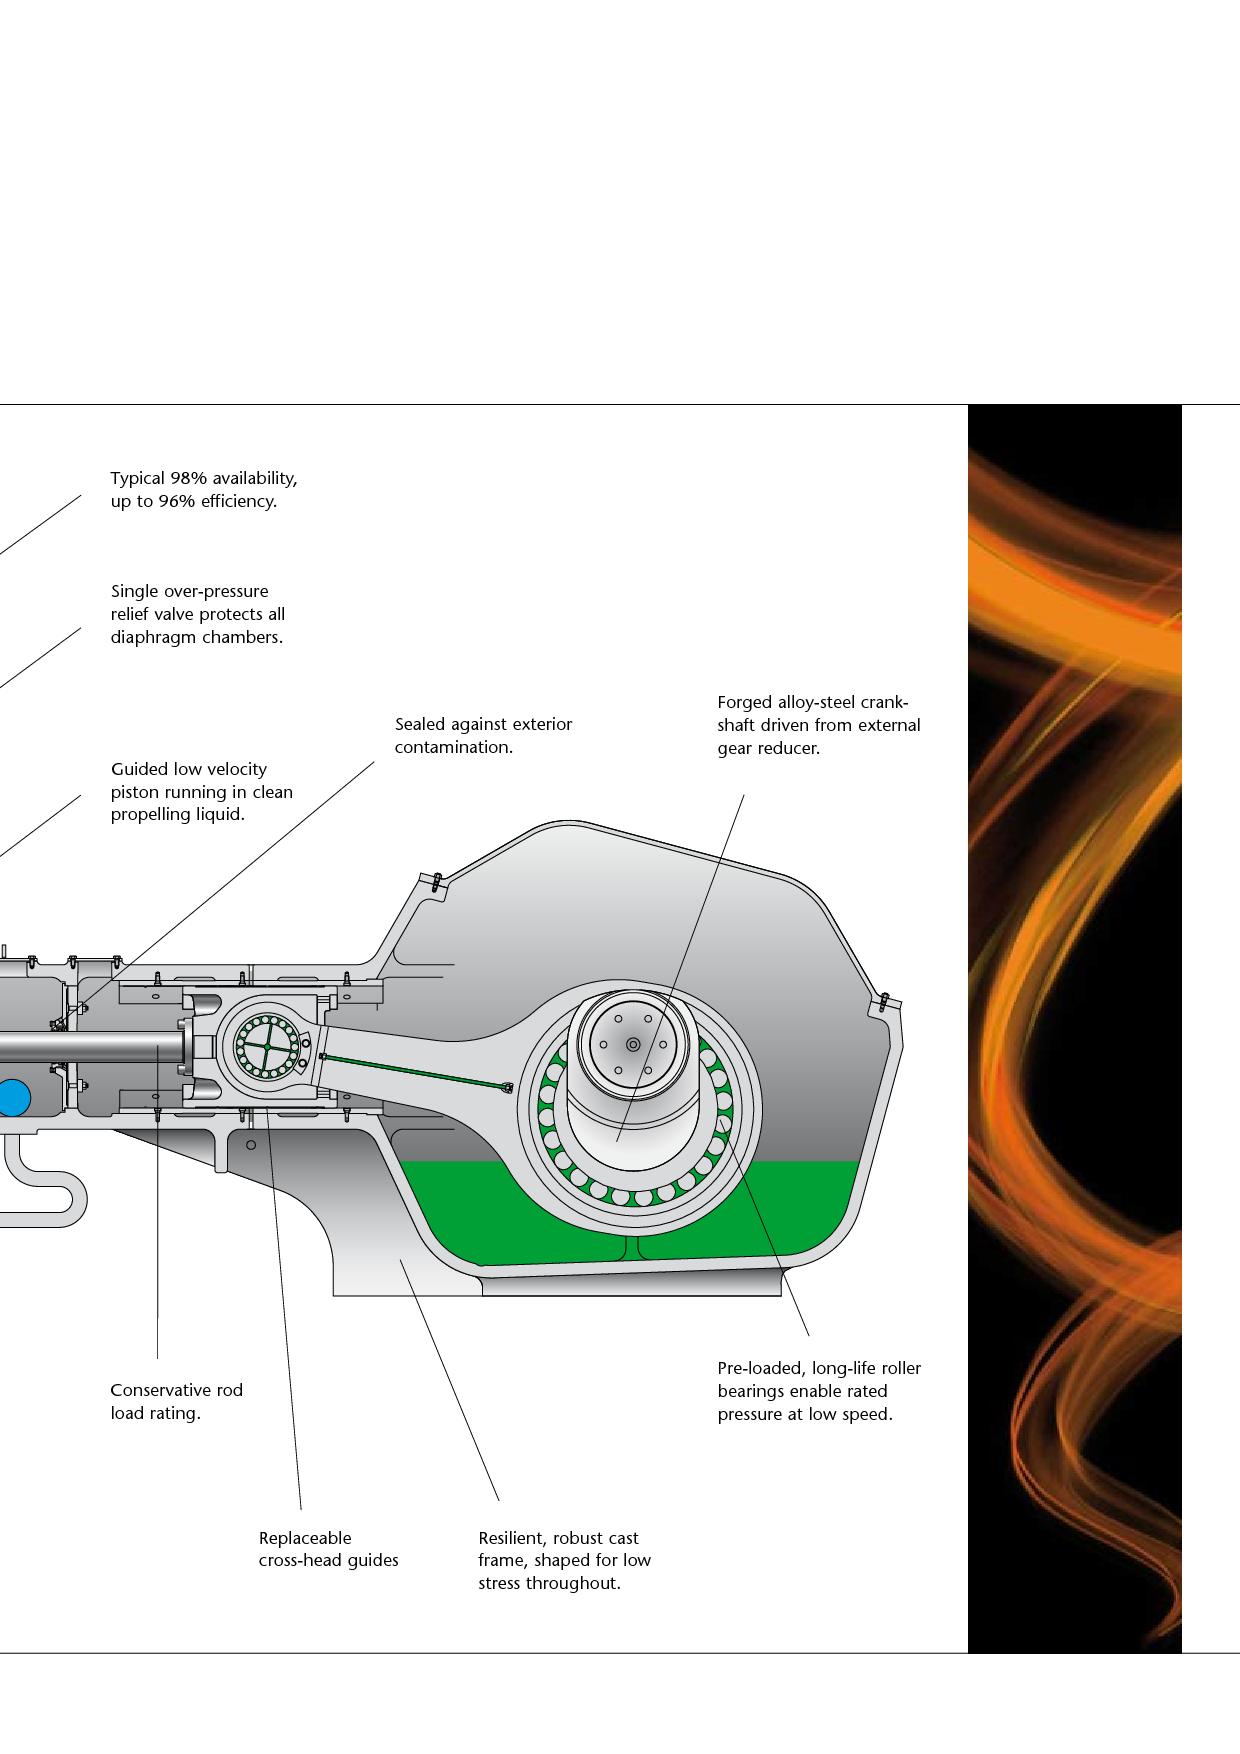 Key features of the GEHO crankshaft driven piston diaphragm slurry pum -  pdf download